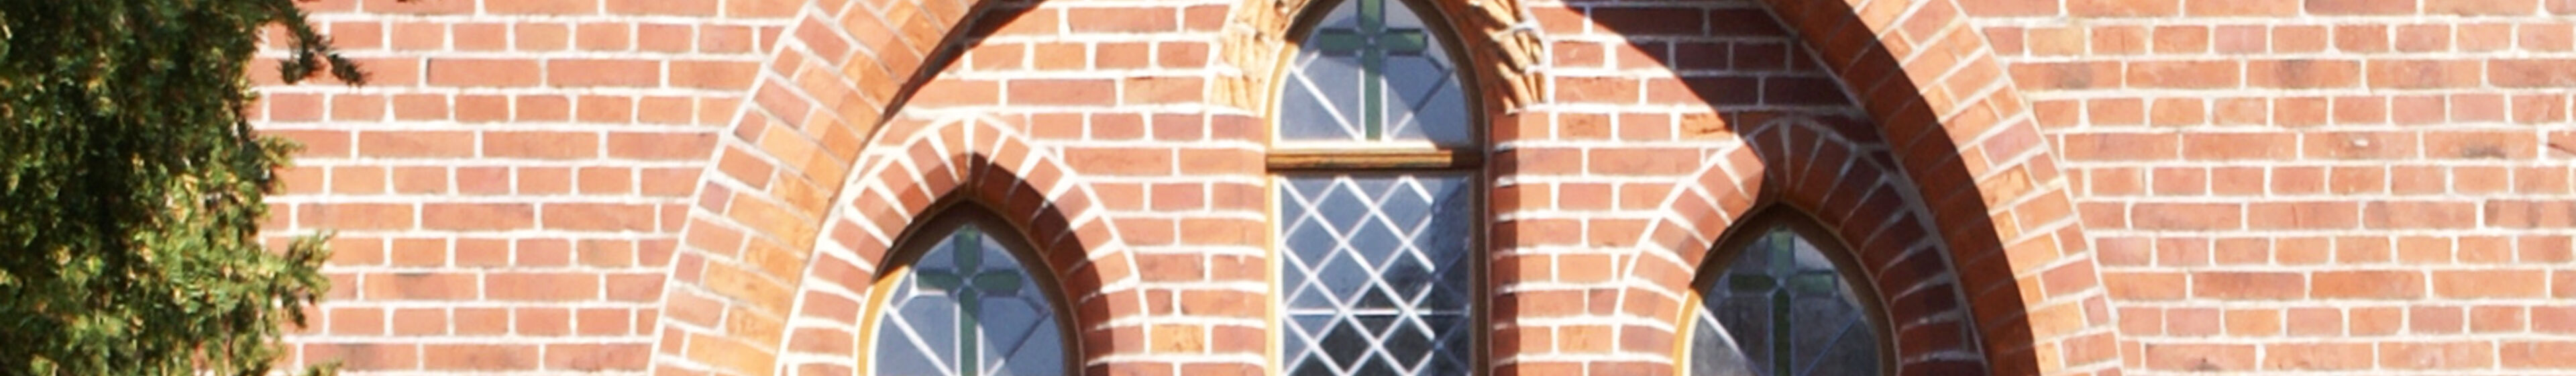 stapel kirchenfenster kopfbild c